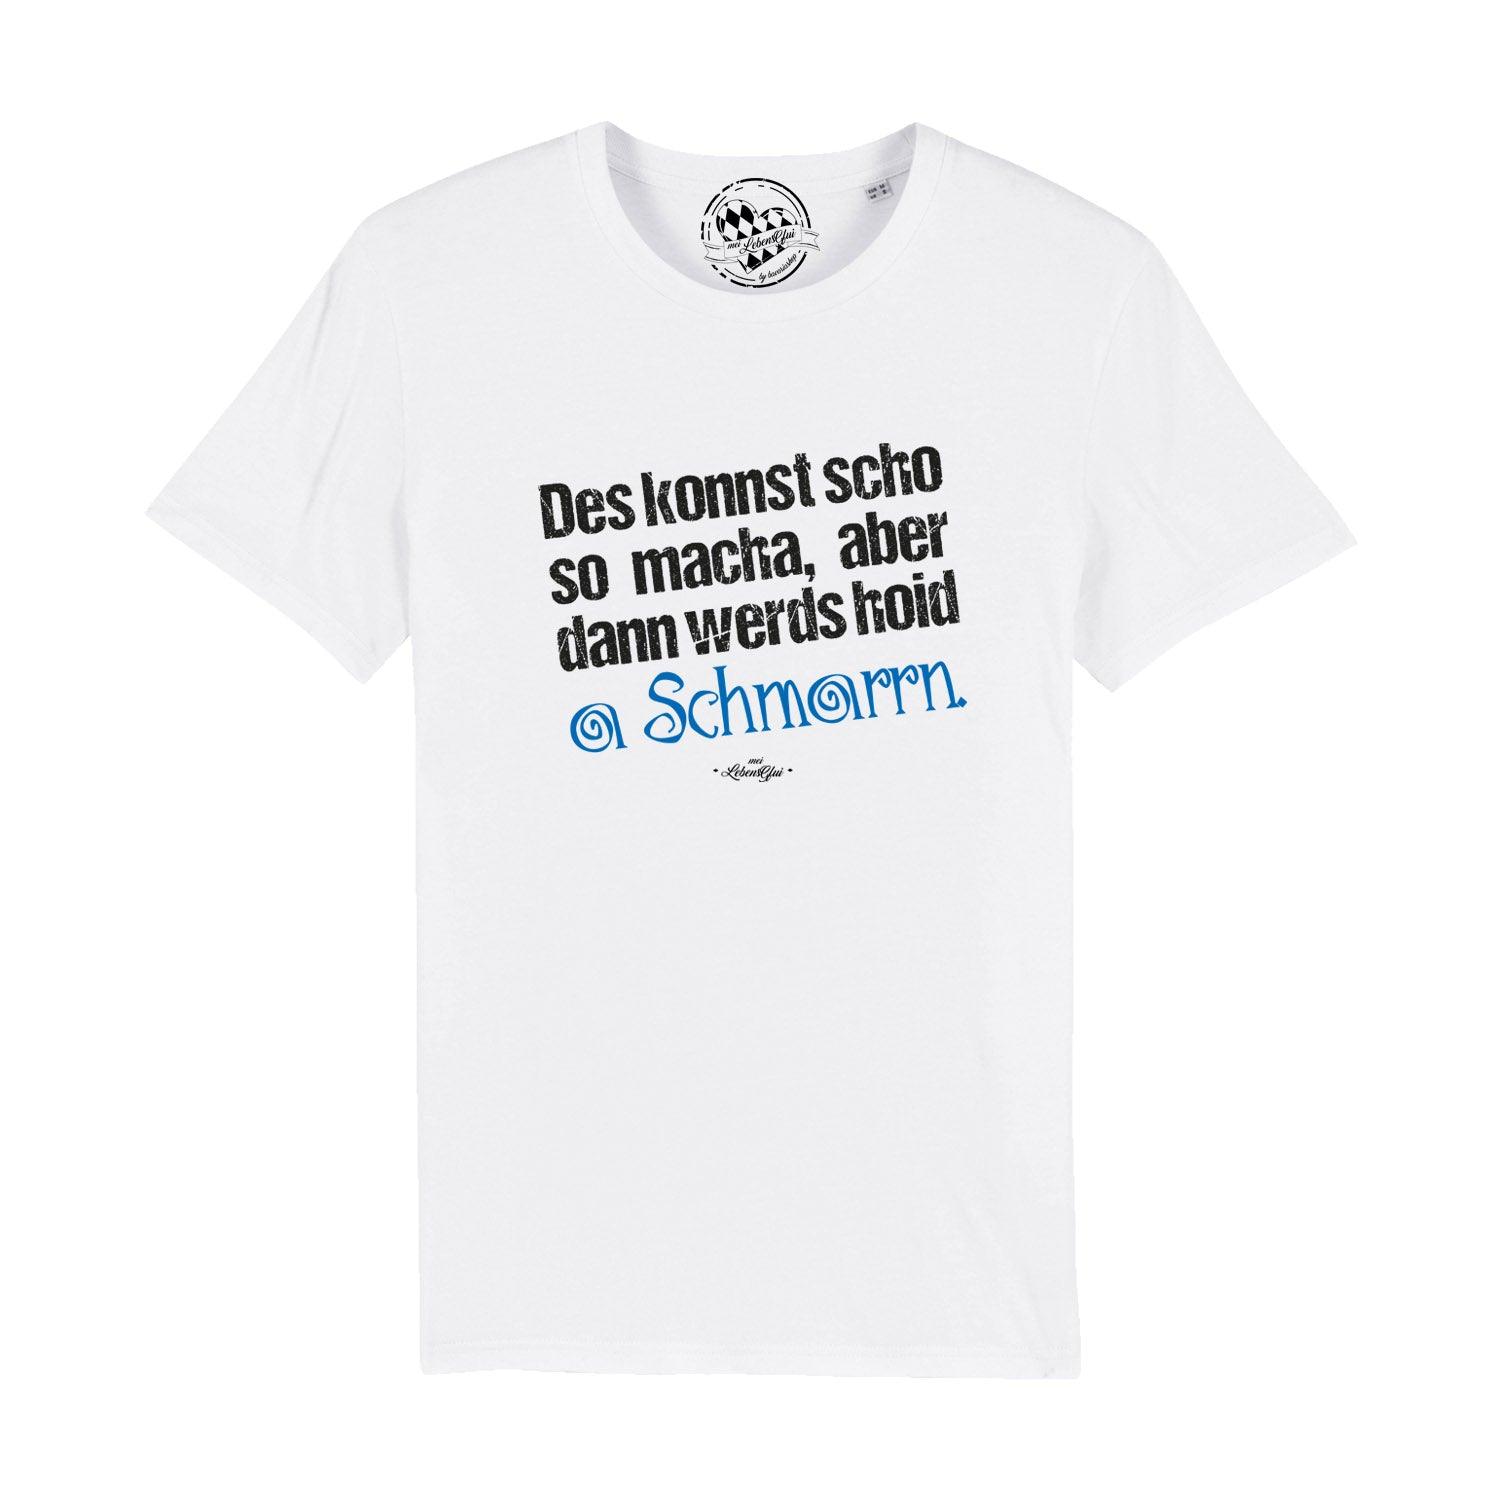 Herren T-Shirt "Konnst scho so macha" - bavariashop - mei LebensGfui